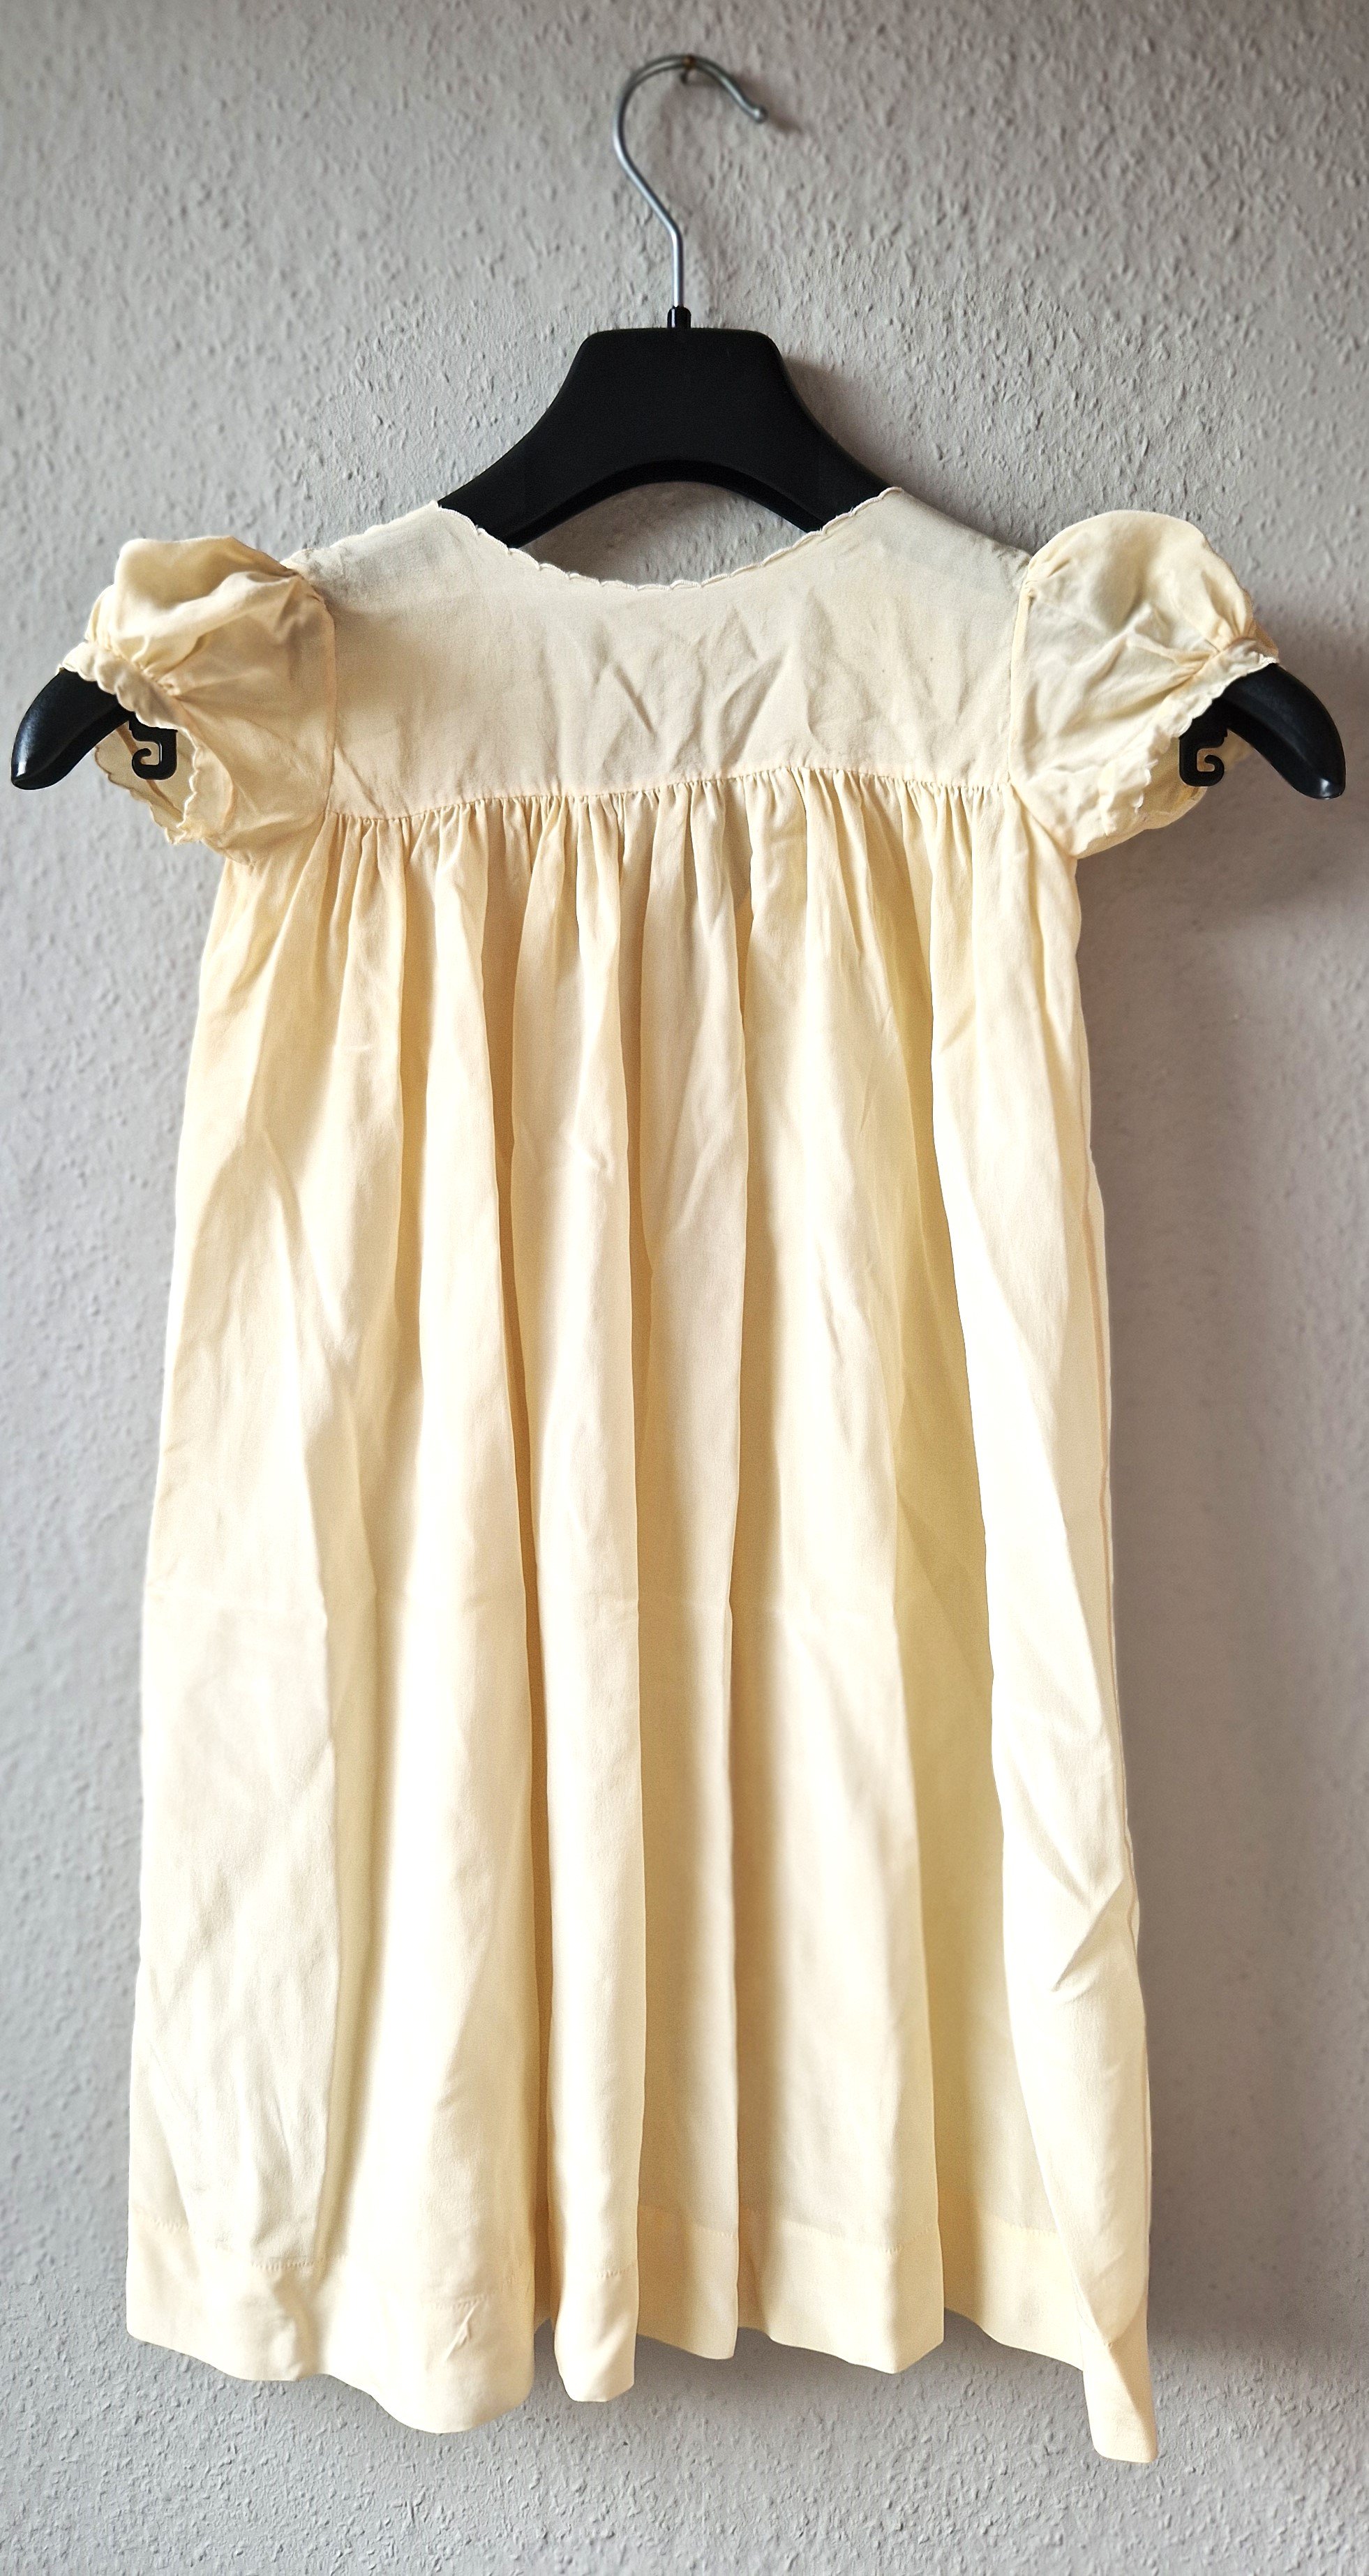 Kinderkleid (Taufkleid) aus cremefarbener Seide, 2. Hälfte 20. Jh. (?) (Schloß Wernigerode GmbH RR-R)